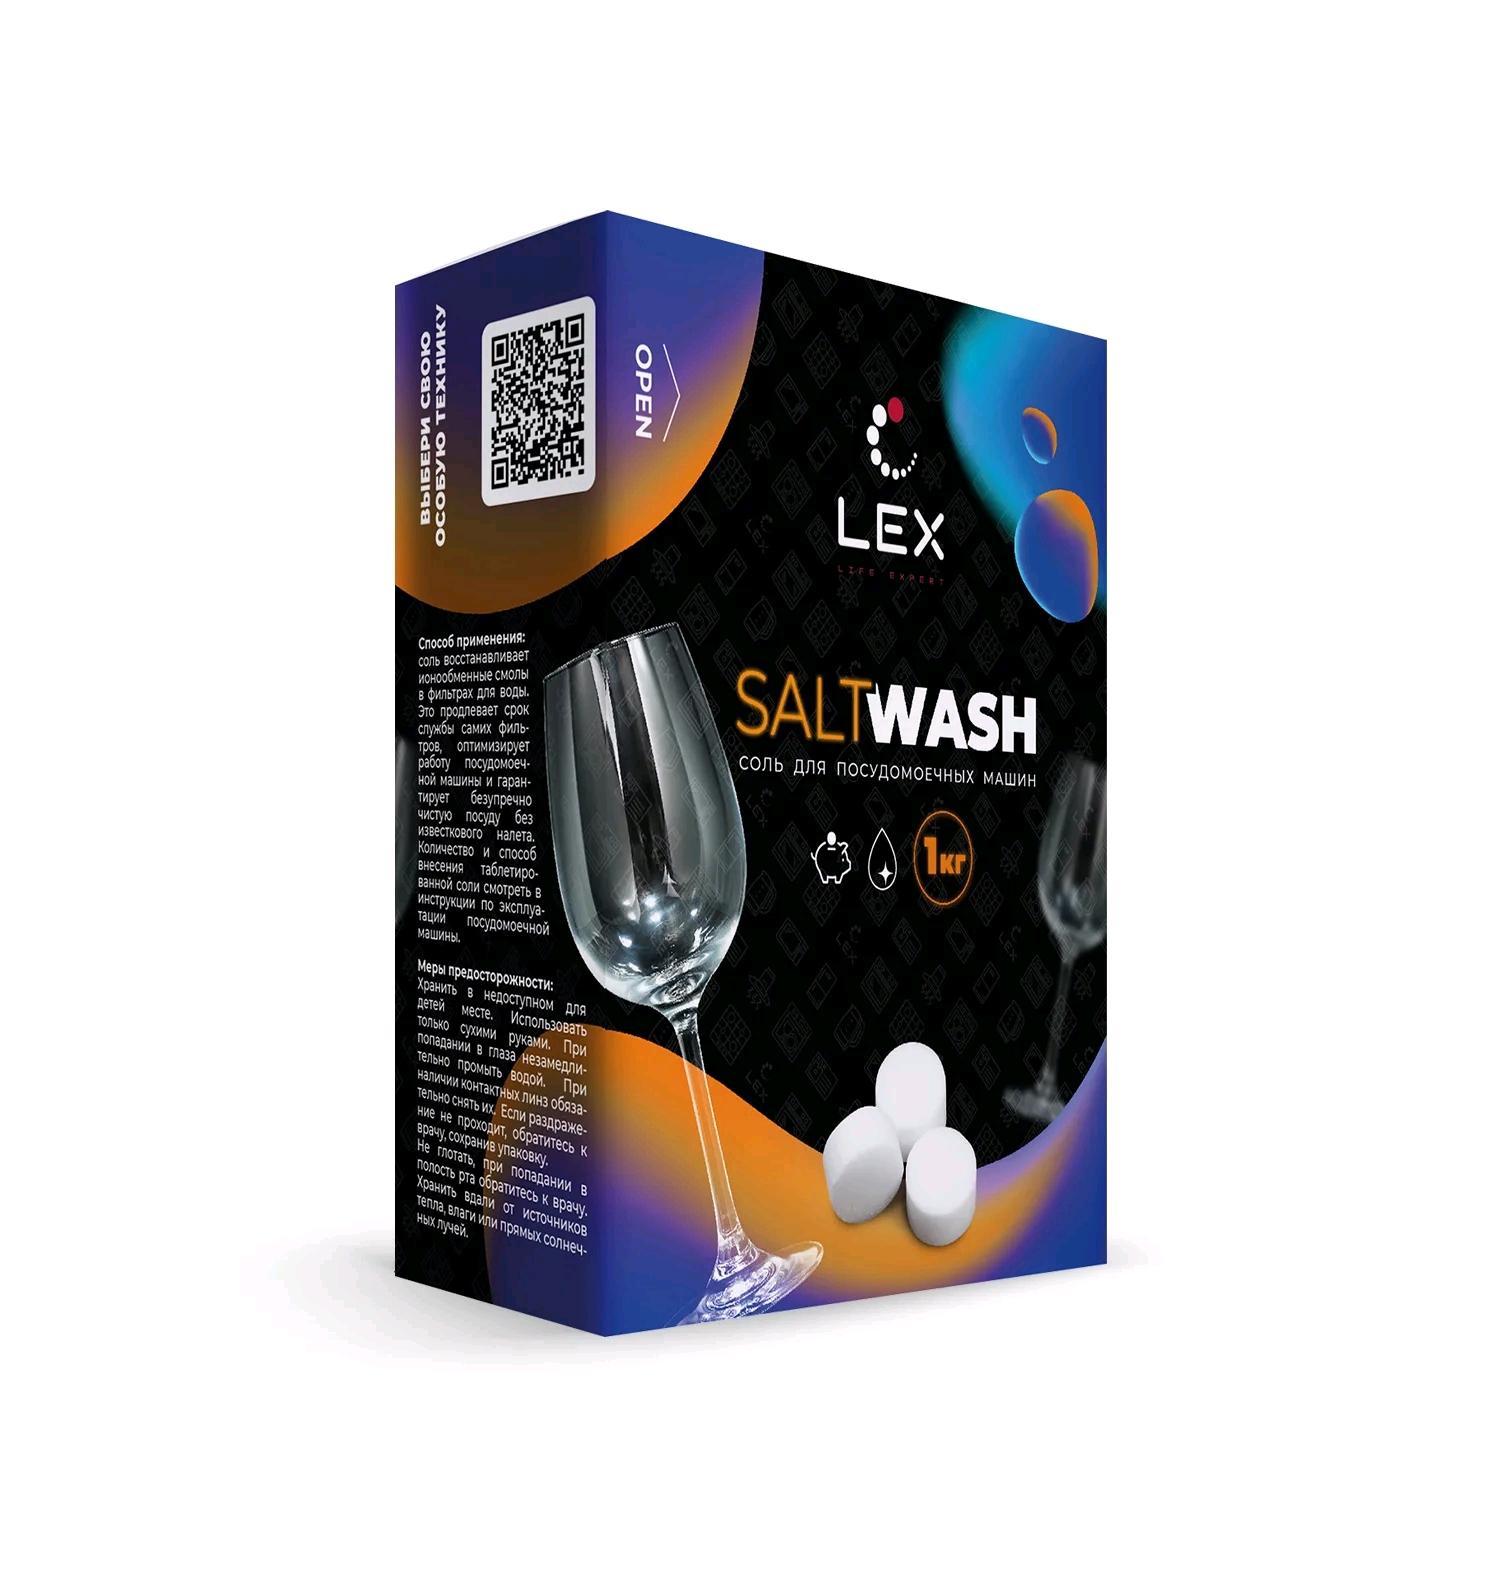 Соль таблетированная для ПММ LEX 1000 г/для очистки (SALTWASH) Средство для ПММ